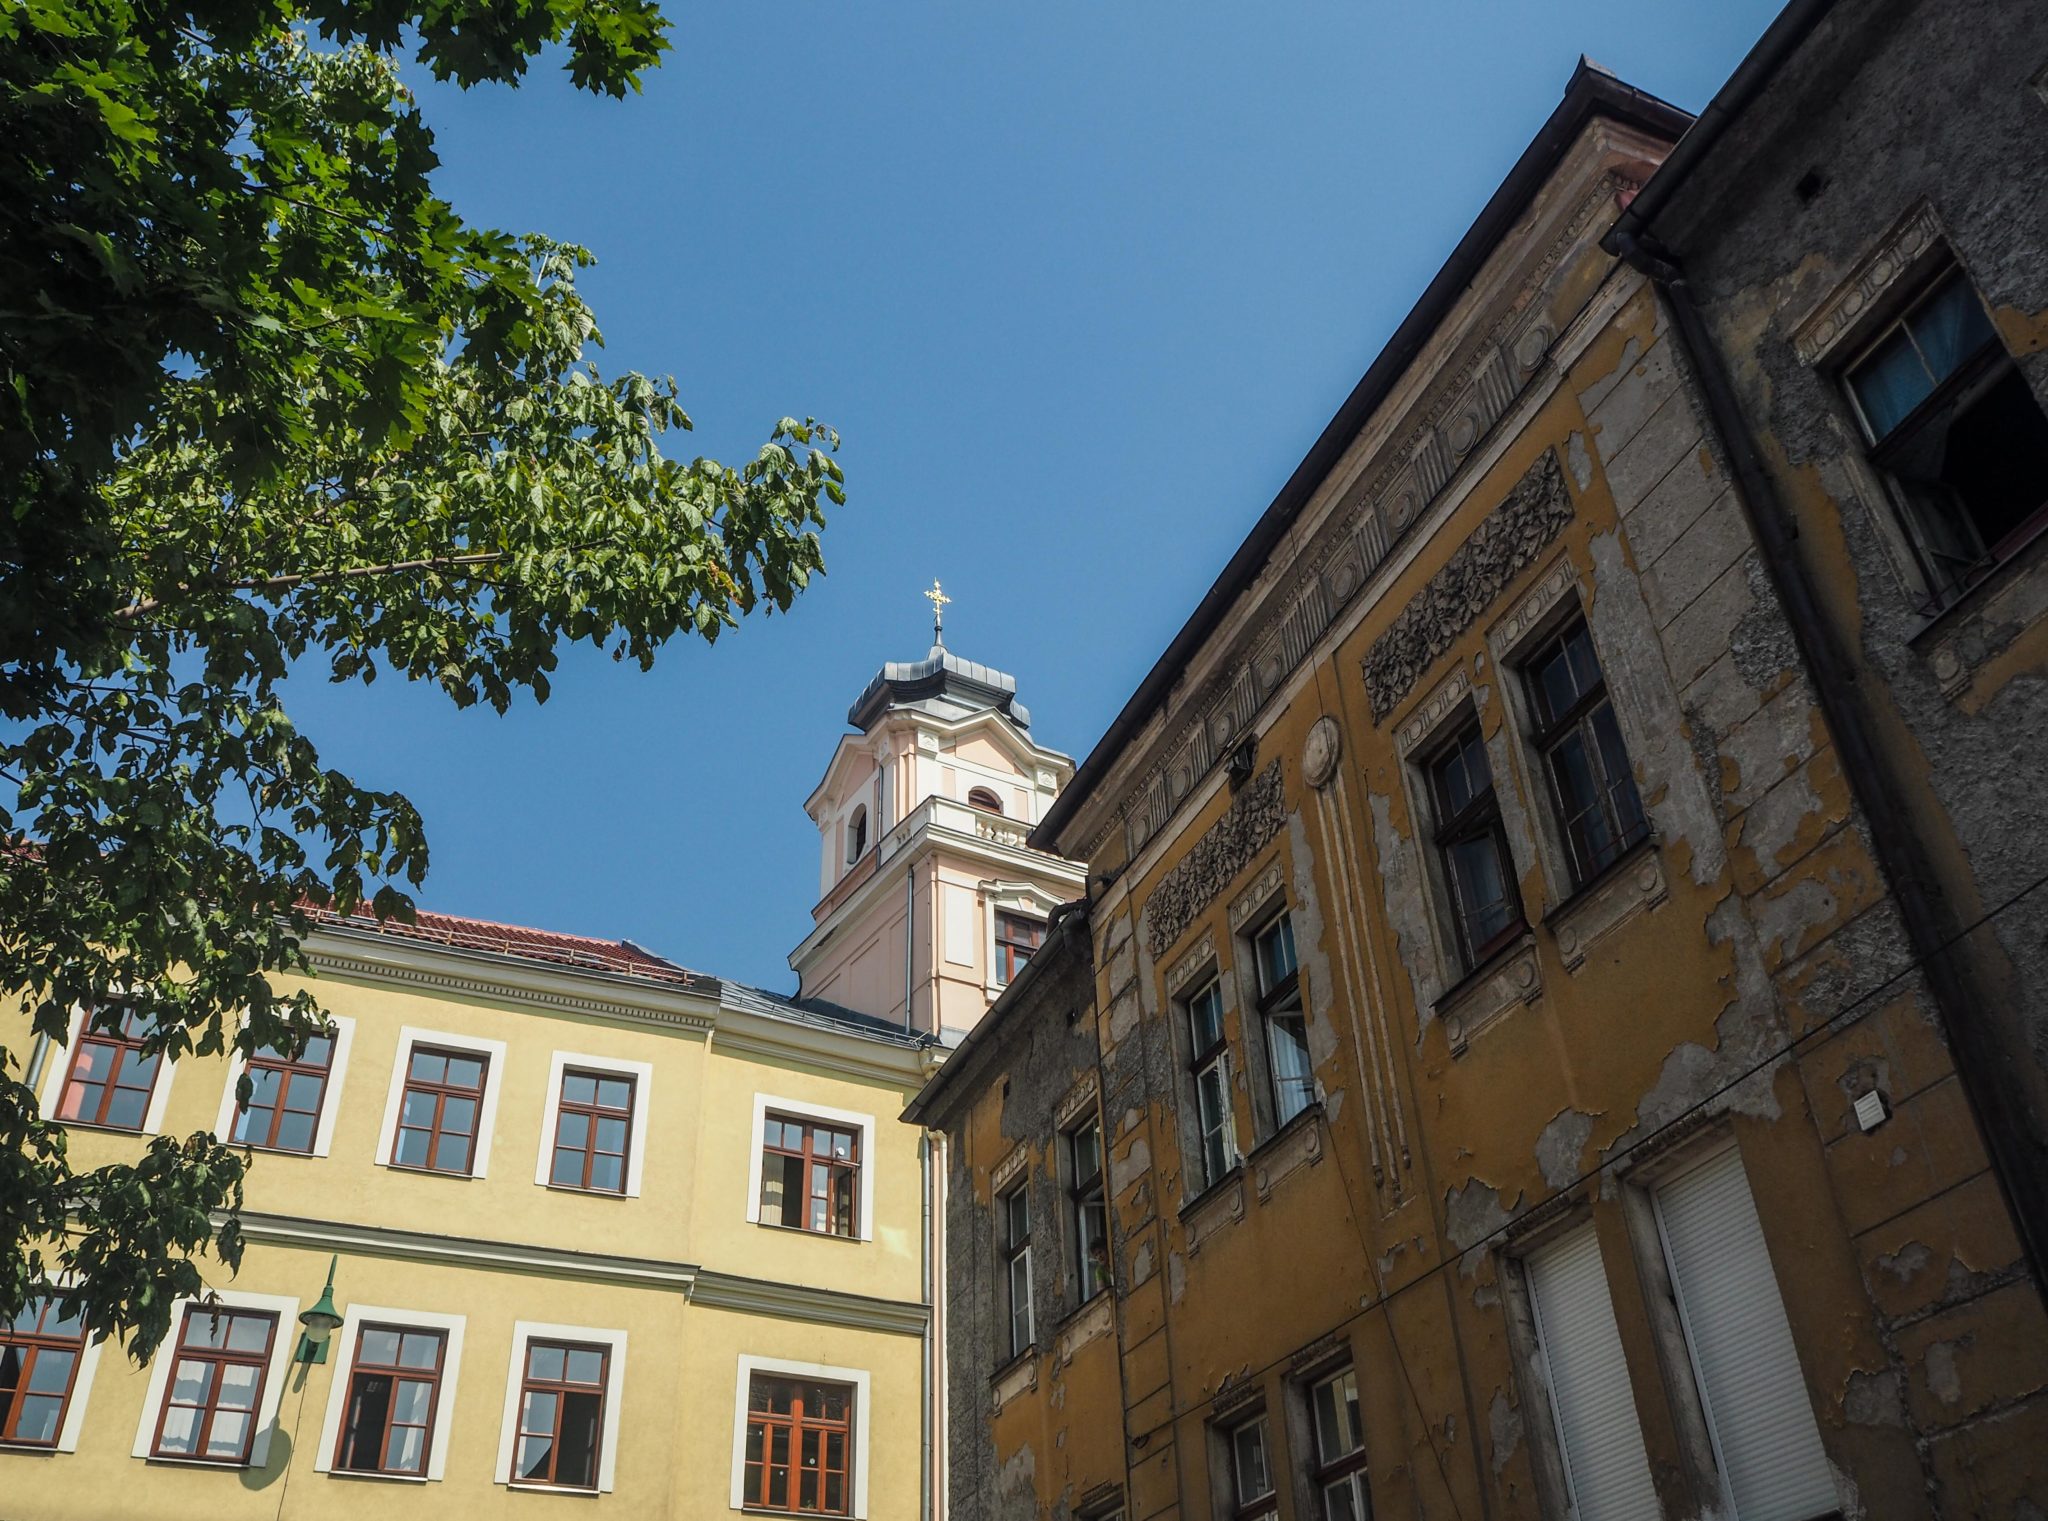 Visiter Sarajevo, la capitale de la Bosnie-Herzégovine: un été nomade à Sarajevo, un coup de coeur! Que faire et que visiter à Sarajevo? Le guide pratique complet pour découvrir Sarajevo et la Bosnie